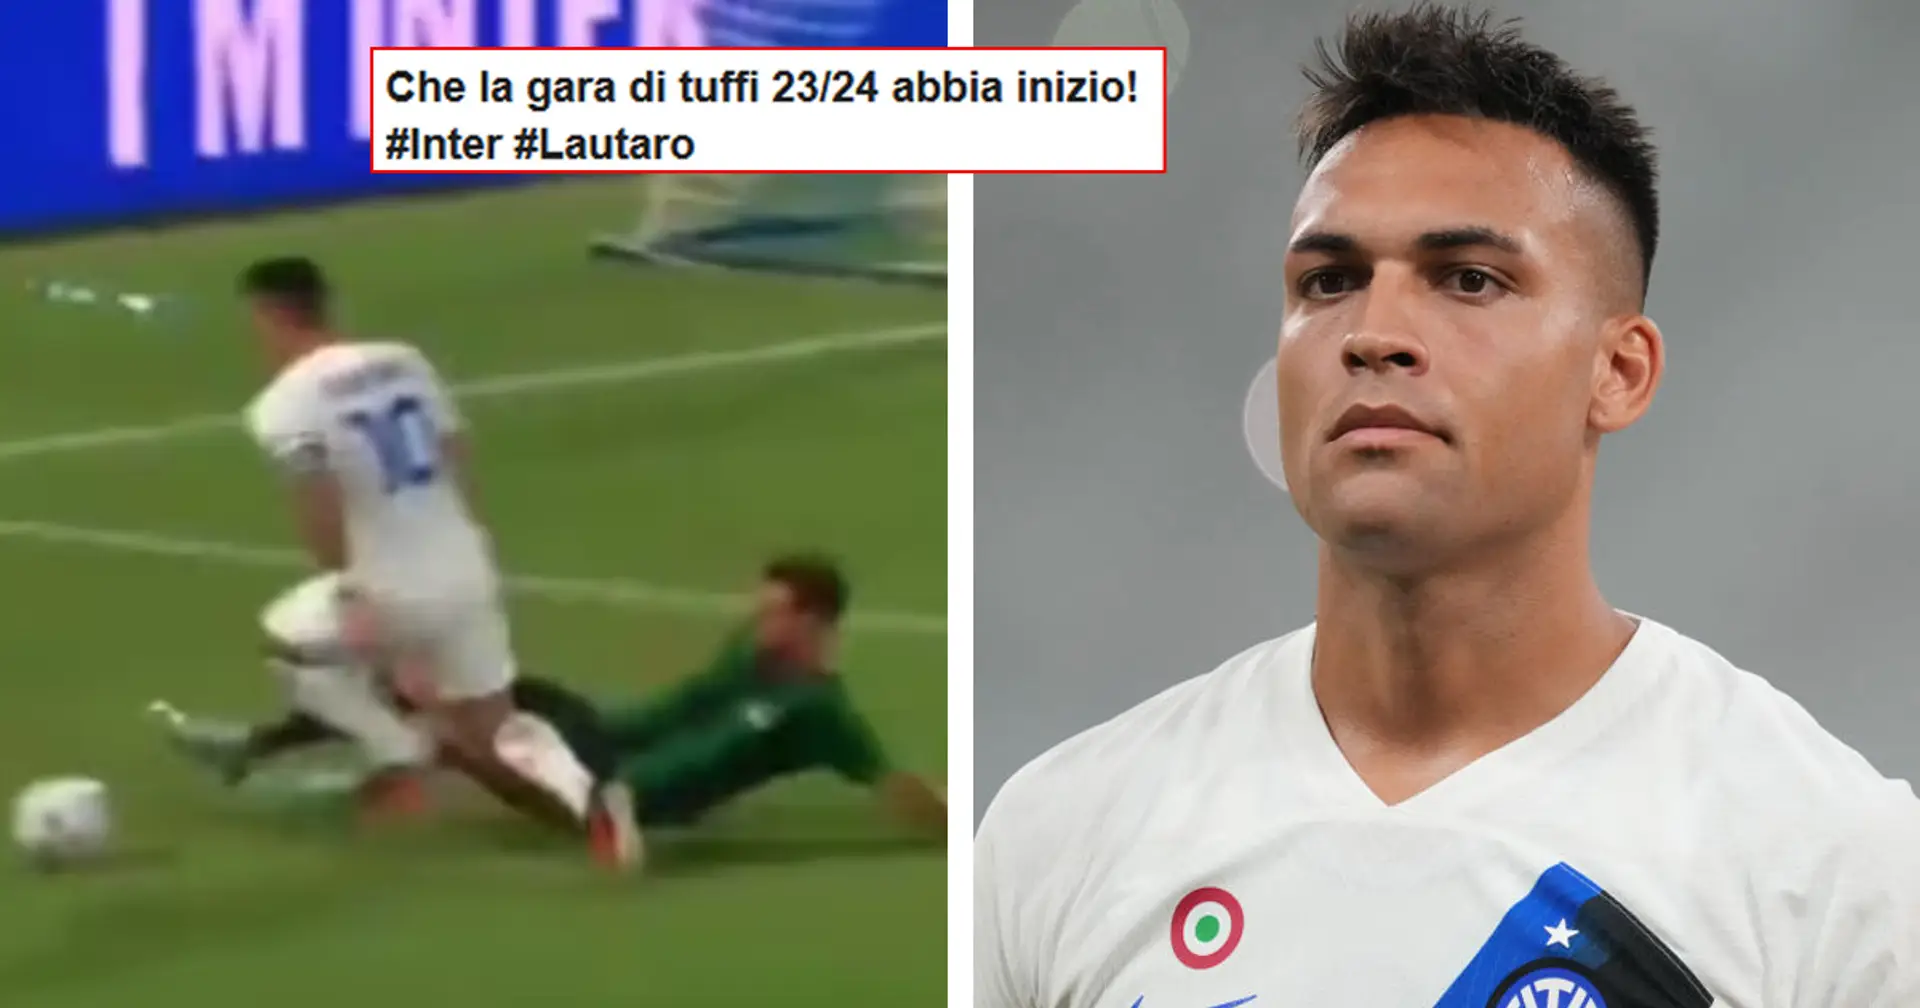 "Che bel tuffo!": la simulazione di Lautaro in amichevole è virale sul web, tifosi del Milan indignati sui social